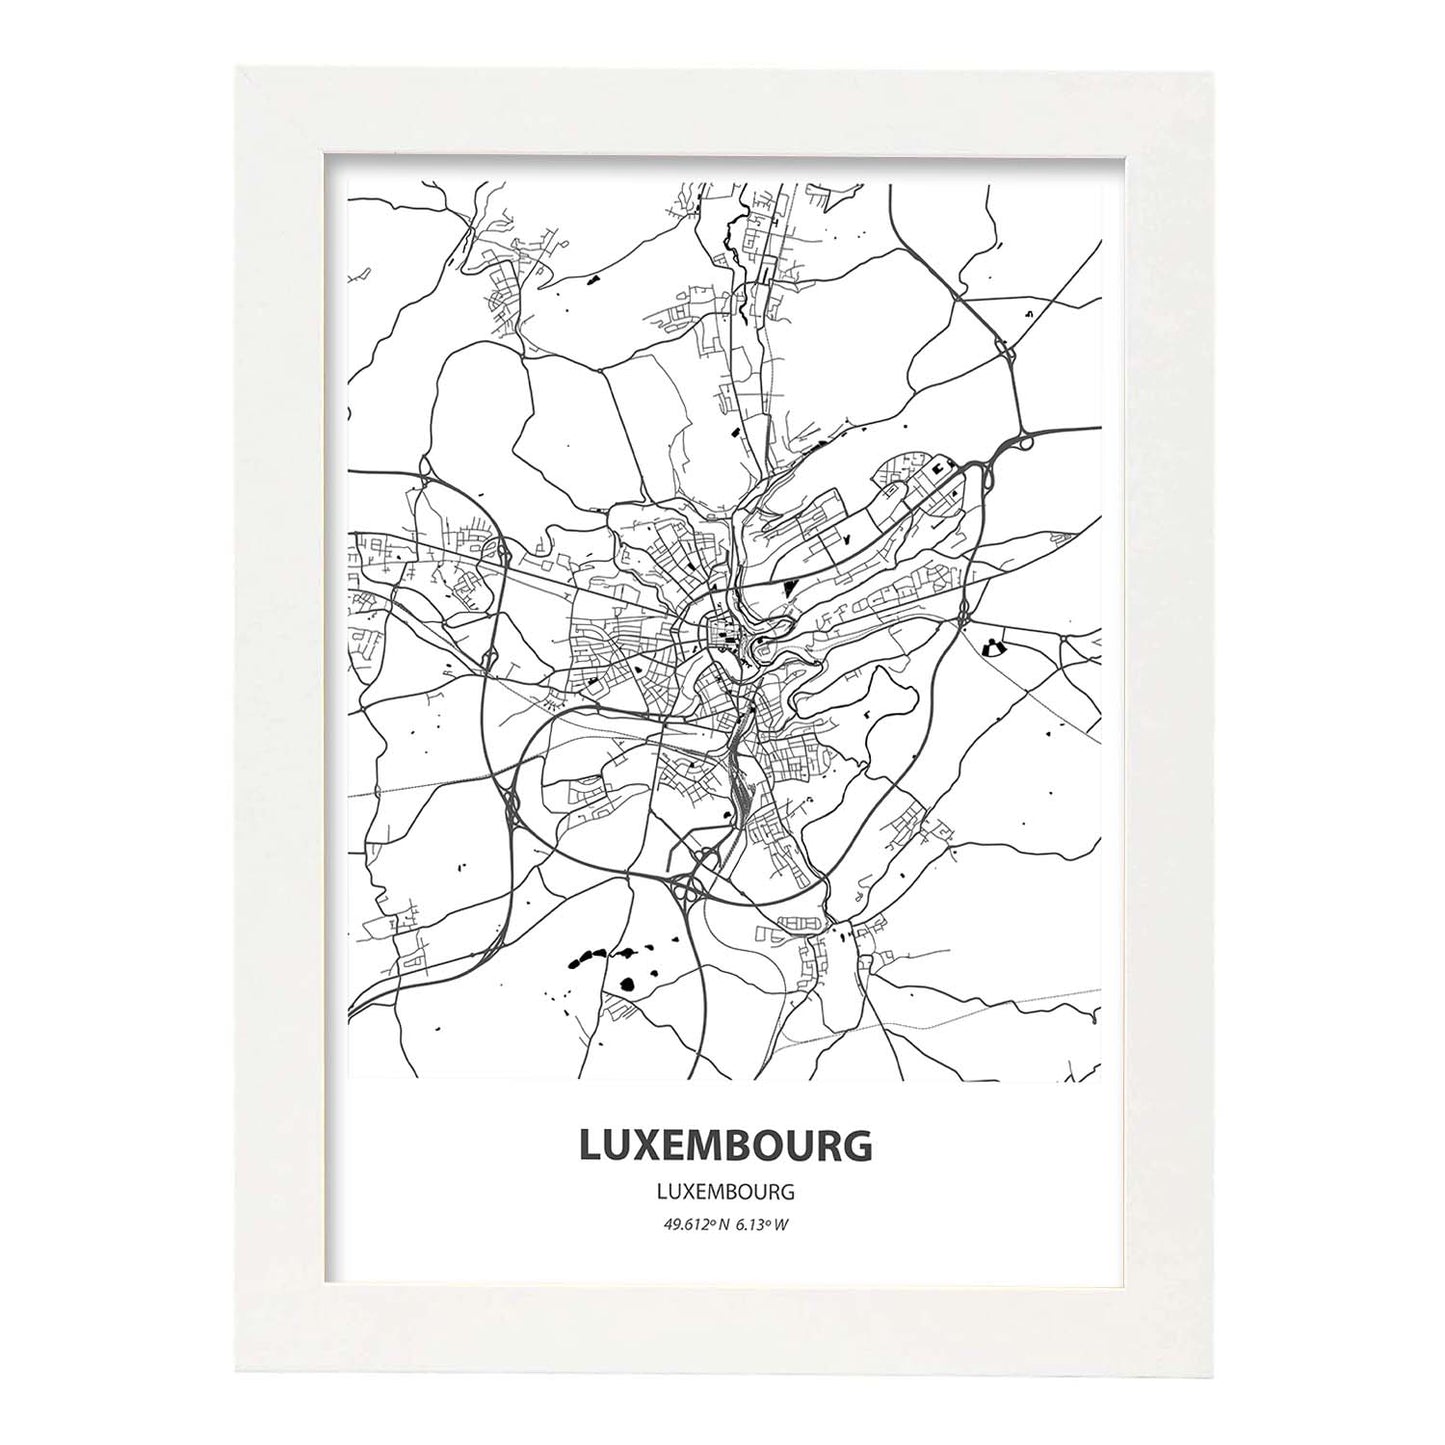 Poster con mapa de Luxemburgo - Luxemburgo. Láminas de ciudades de Europa con mares y ríos en color negro.-Artwork-Nacnic-A4-Marco Blanco-Nacnic Estudio SL